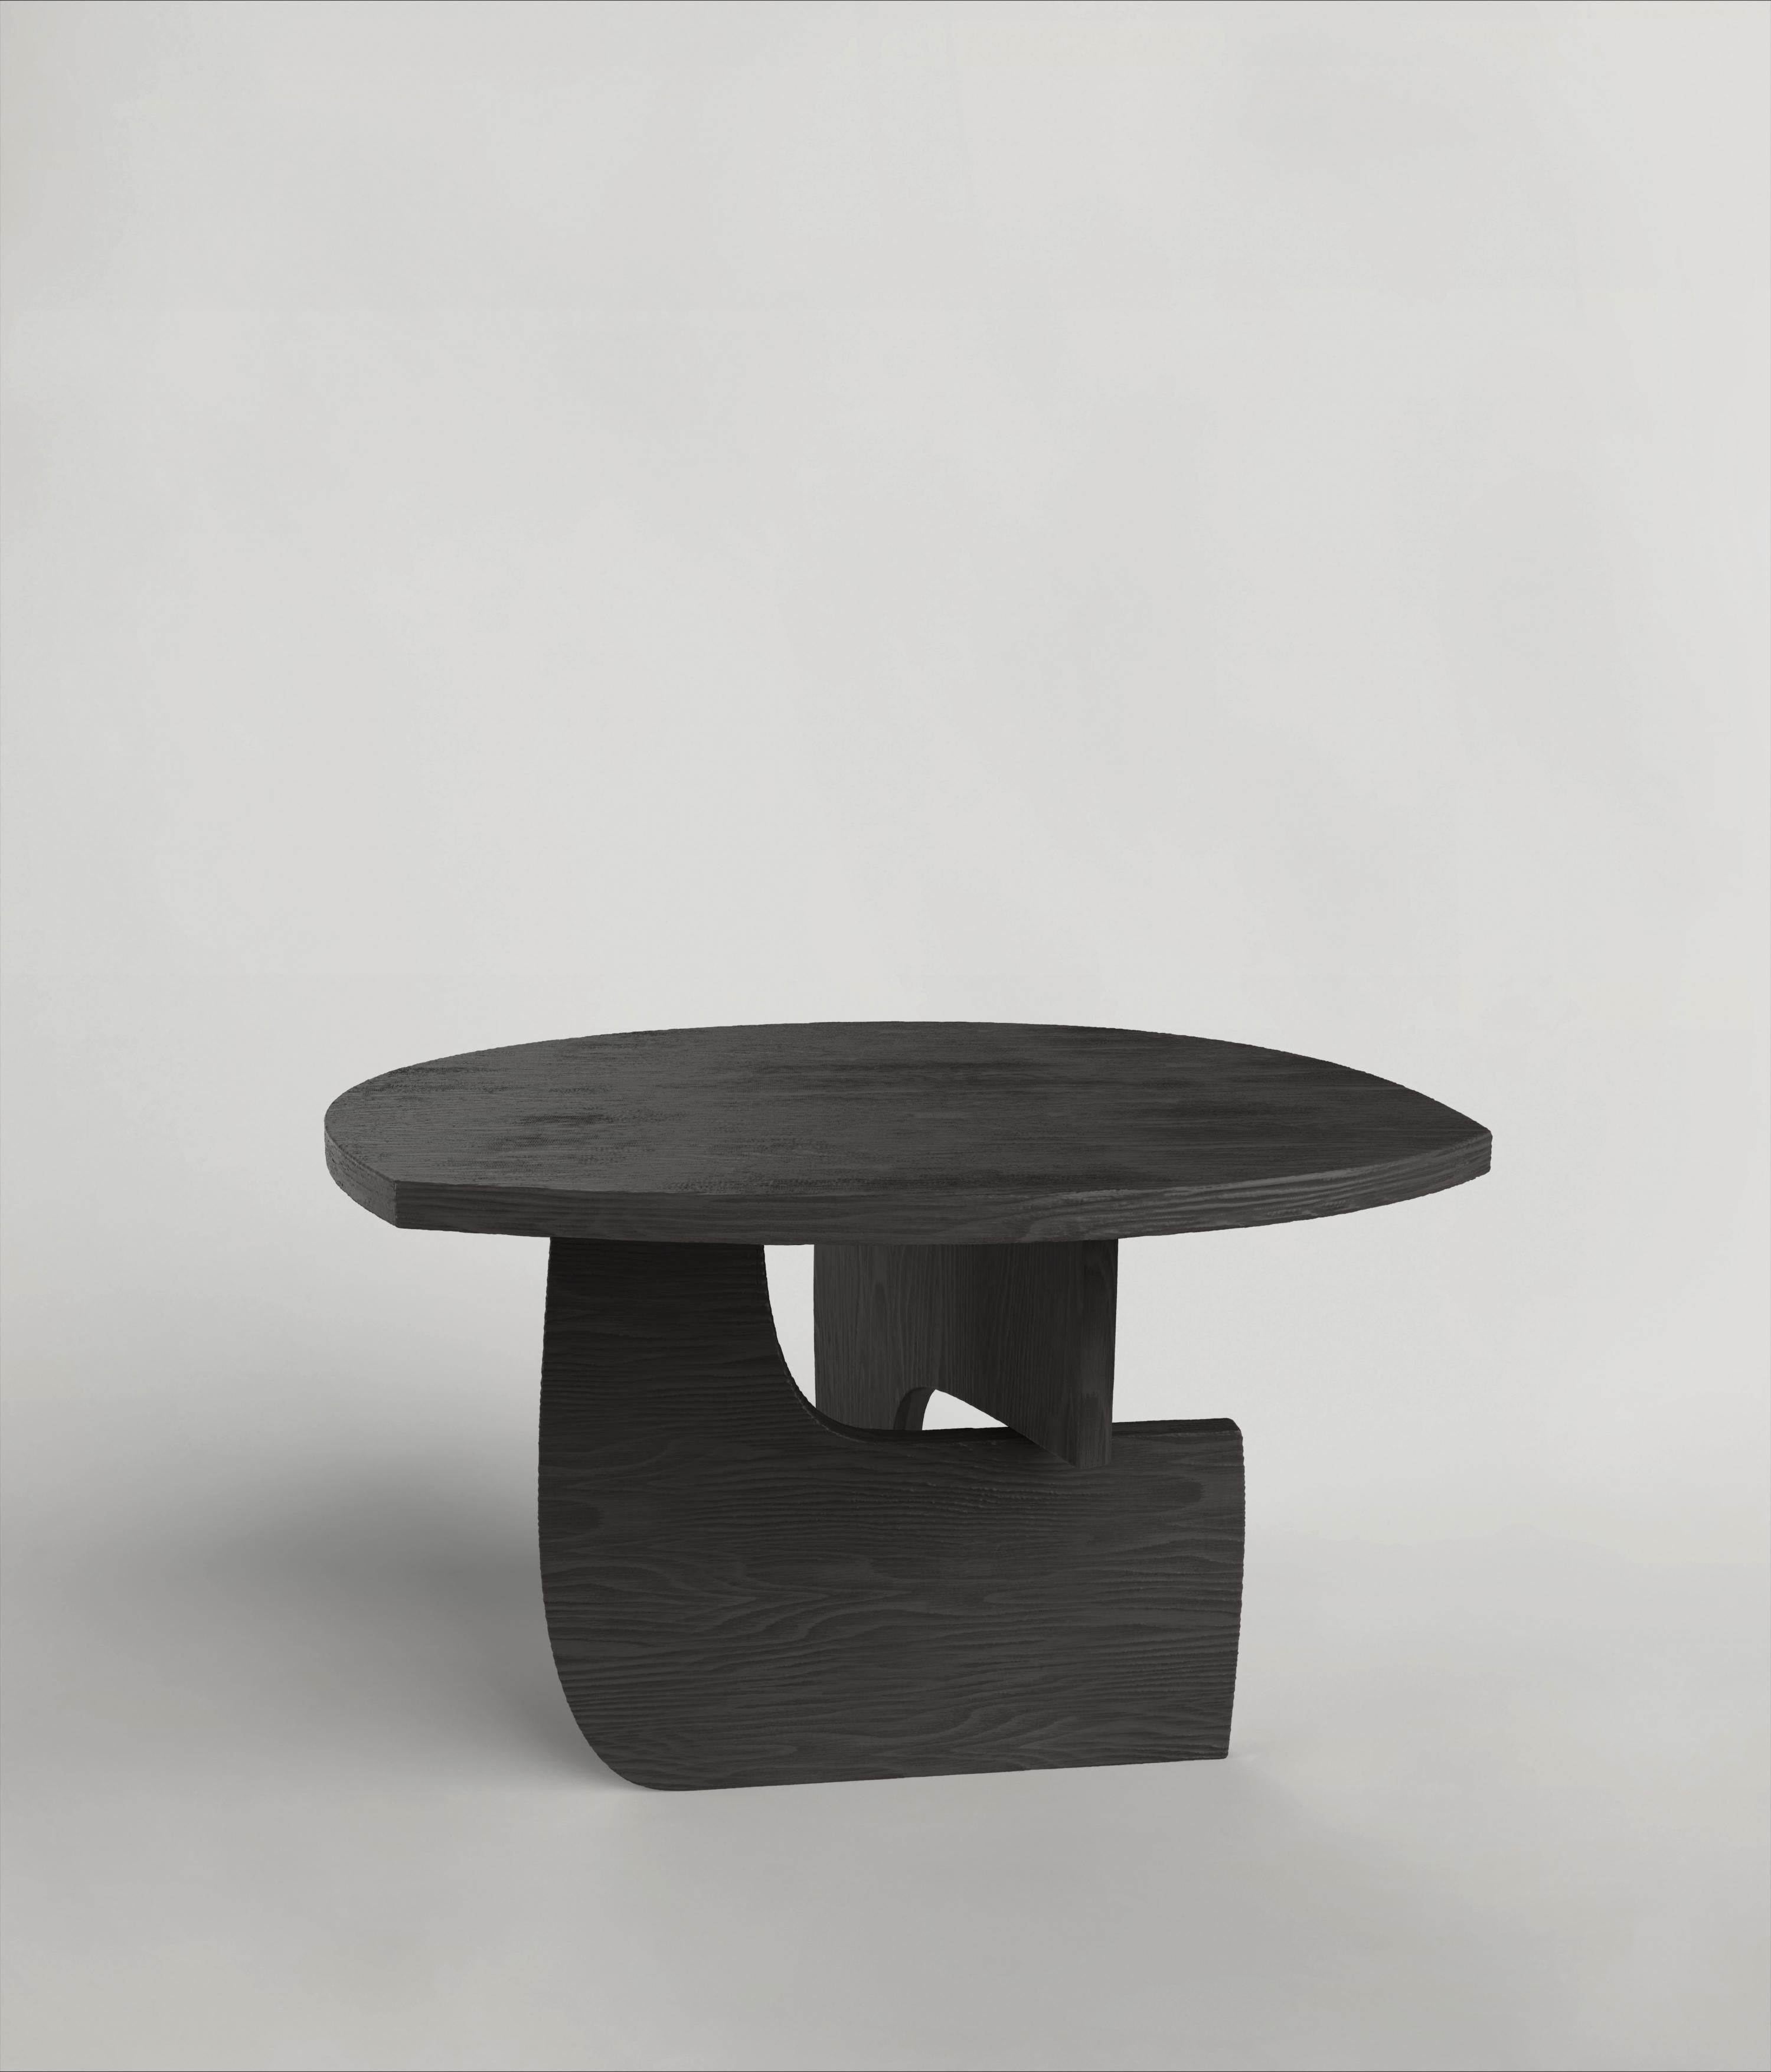 Dieser schwarze Tisch des 21. Jahrhunderts ist ein Produkt italienischer Handwerkskunst, das komplett aus Hartholz besteht. Die Handwerker modellieren Reef V2 und verkohlen das Holz anschließend mit der Shou Sugi Ban-Technik. Das Stück wird in einer